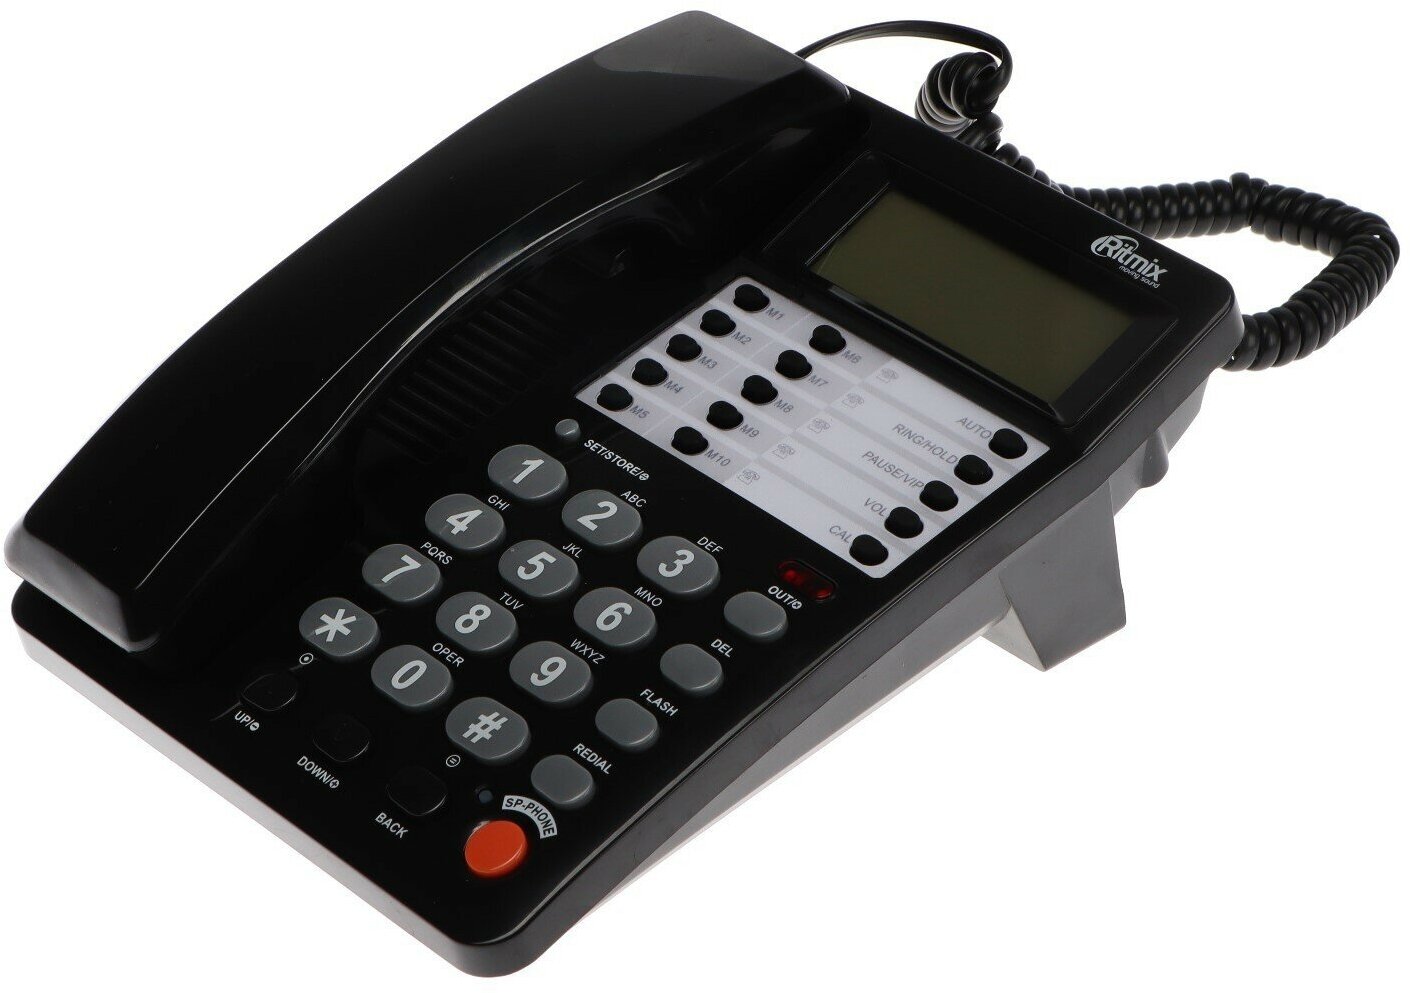 Телефон RT-495, Caller ID, однокнопочный набор, память номеров, спикерфон, черный